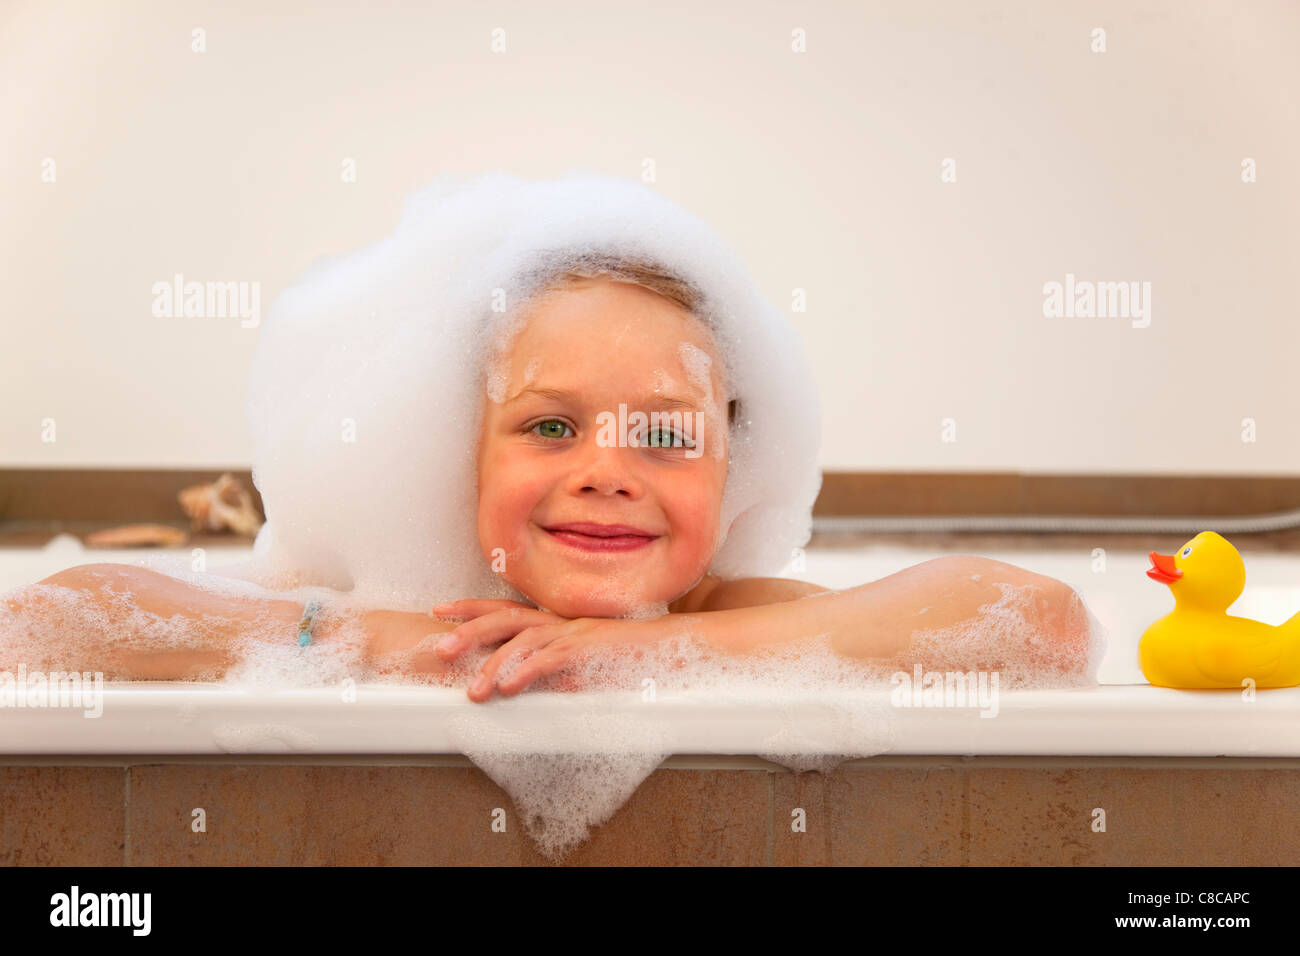 Junge Bedeckt In Den Sprechblasen In Badewanne Stockfotografie Alamy